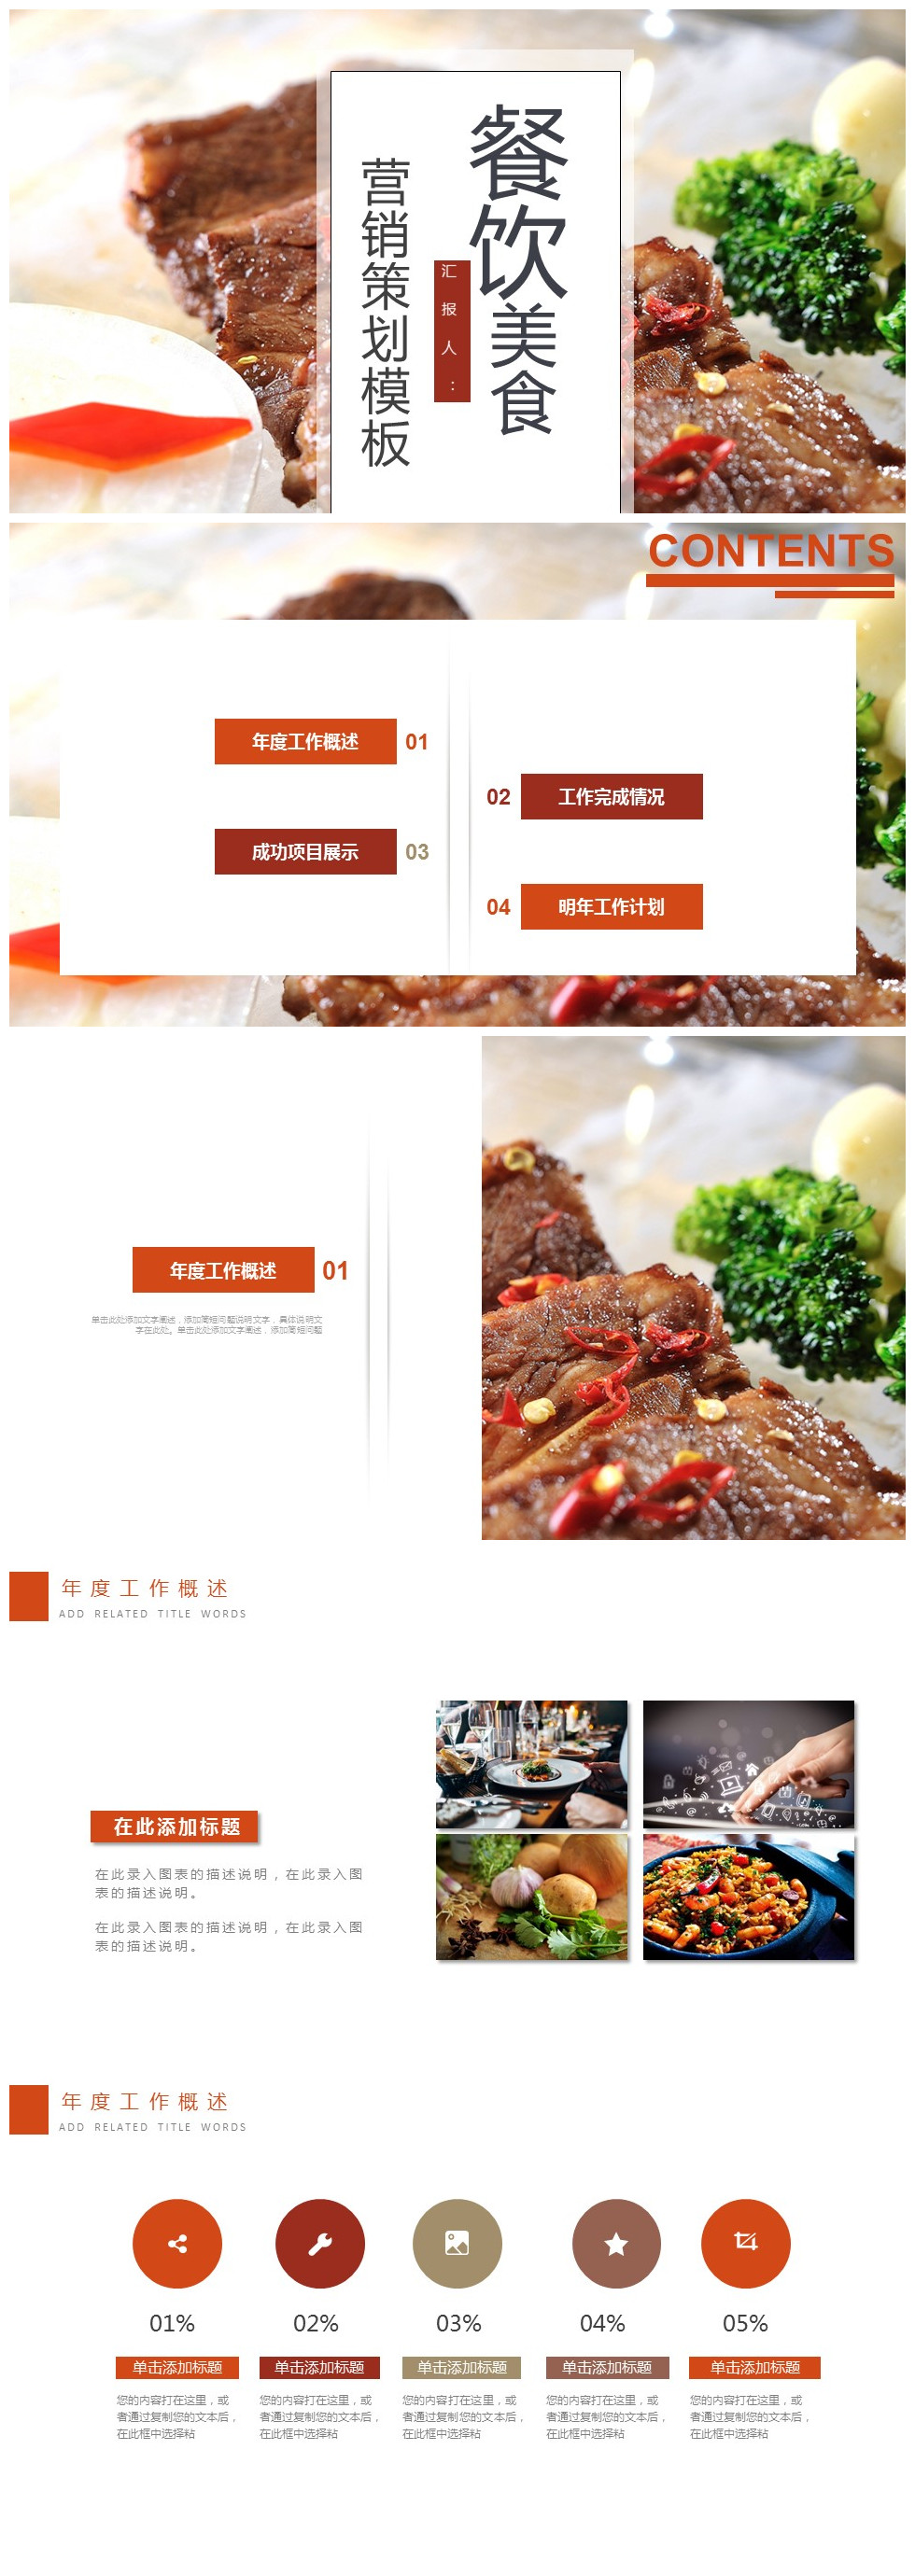 西餐厅餐饮美食酒店营销策划PPT模板下载-聚给网